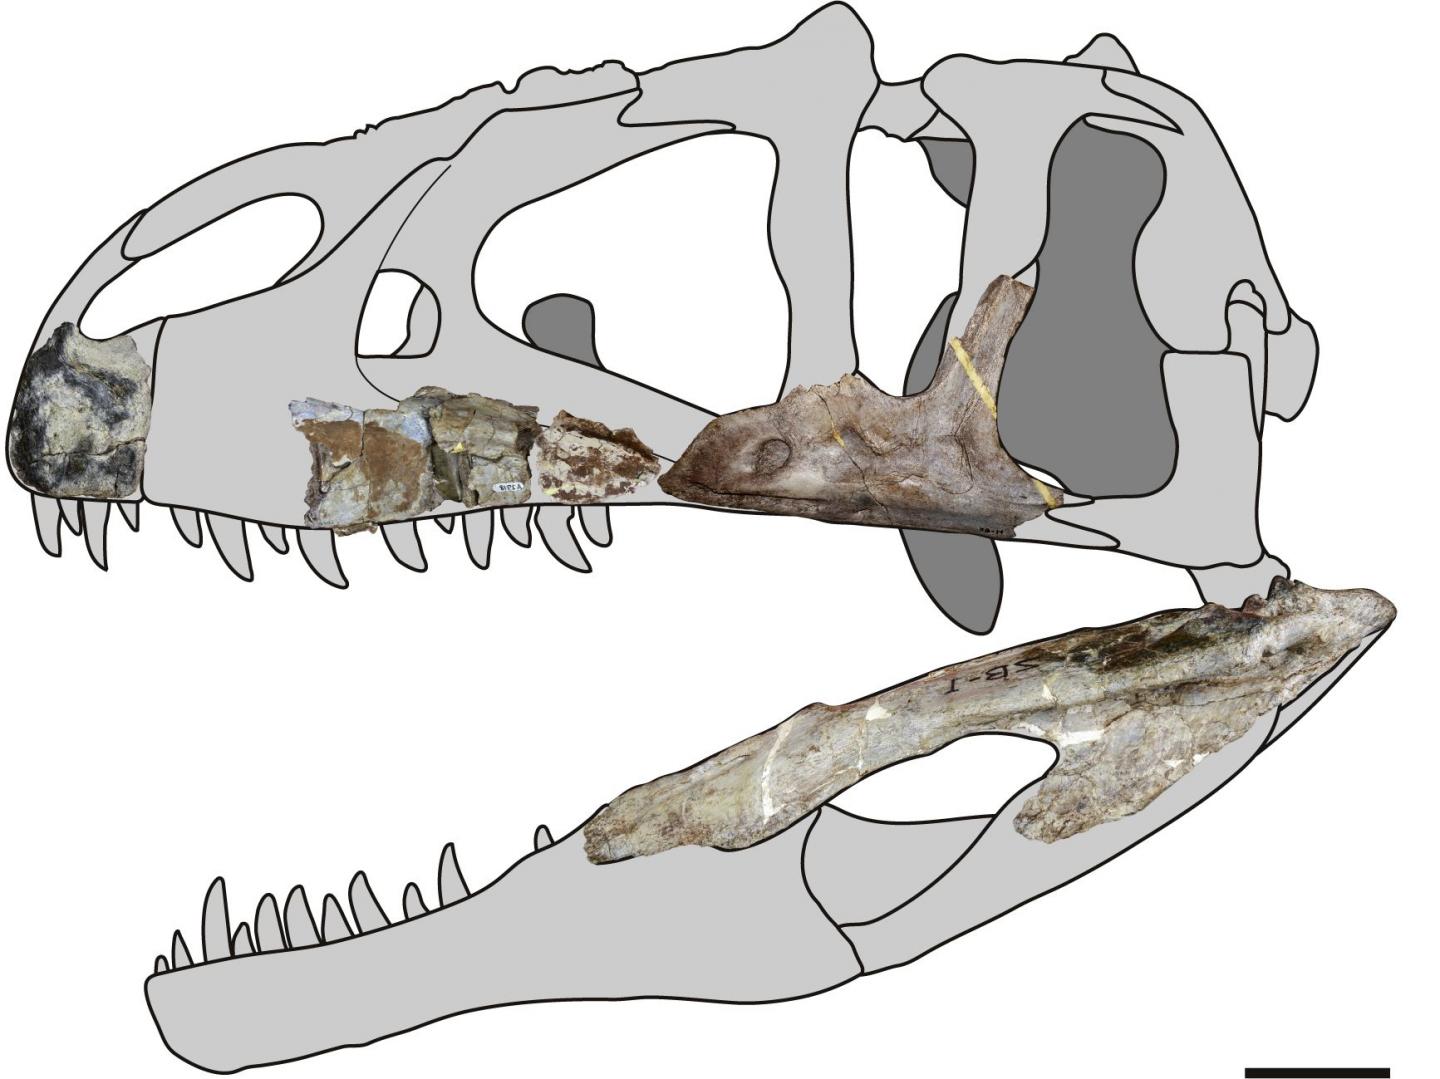 Skeletární diagram nového karcharodontosaurida druhu Siamraptor suwati – znázorněny jsou dochované fosilní části skeletu. I na základě takto nepočetných fragmentů bylo možné stanovit, že se jedná o nový rod a druh karcharodontosauridního teropoda. Př